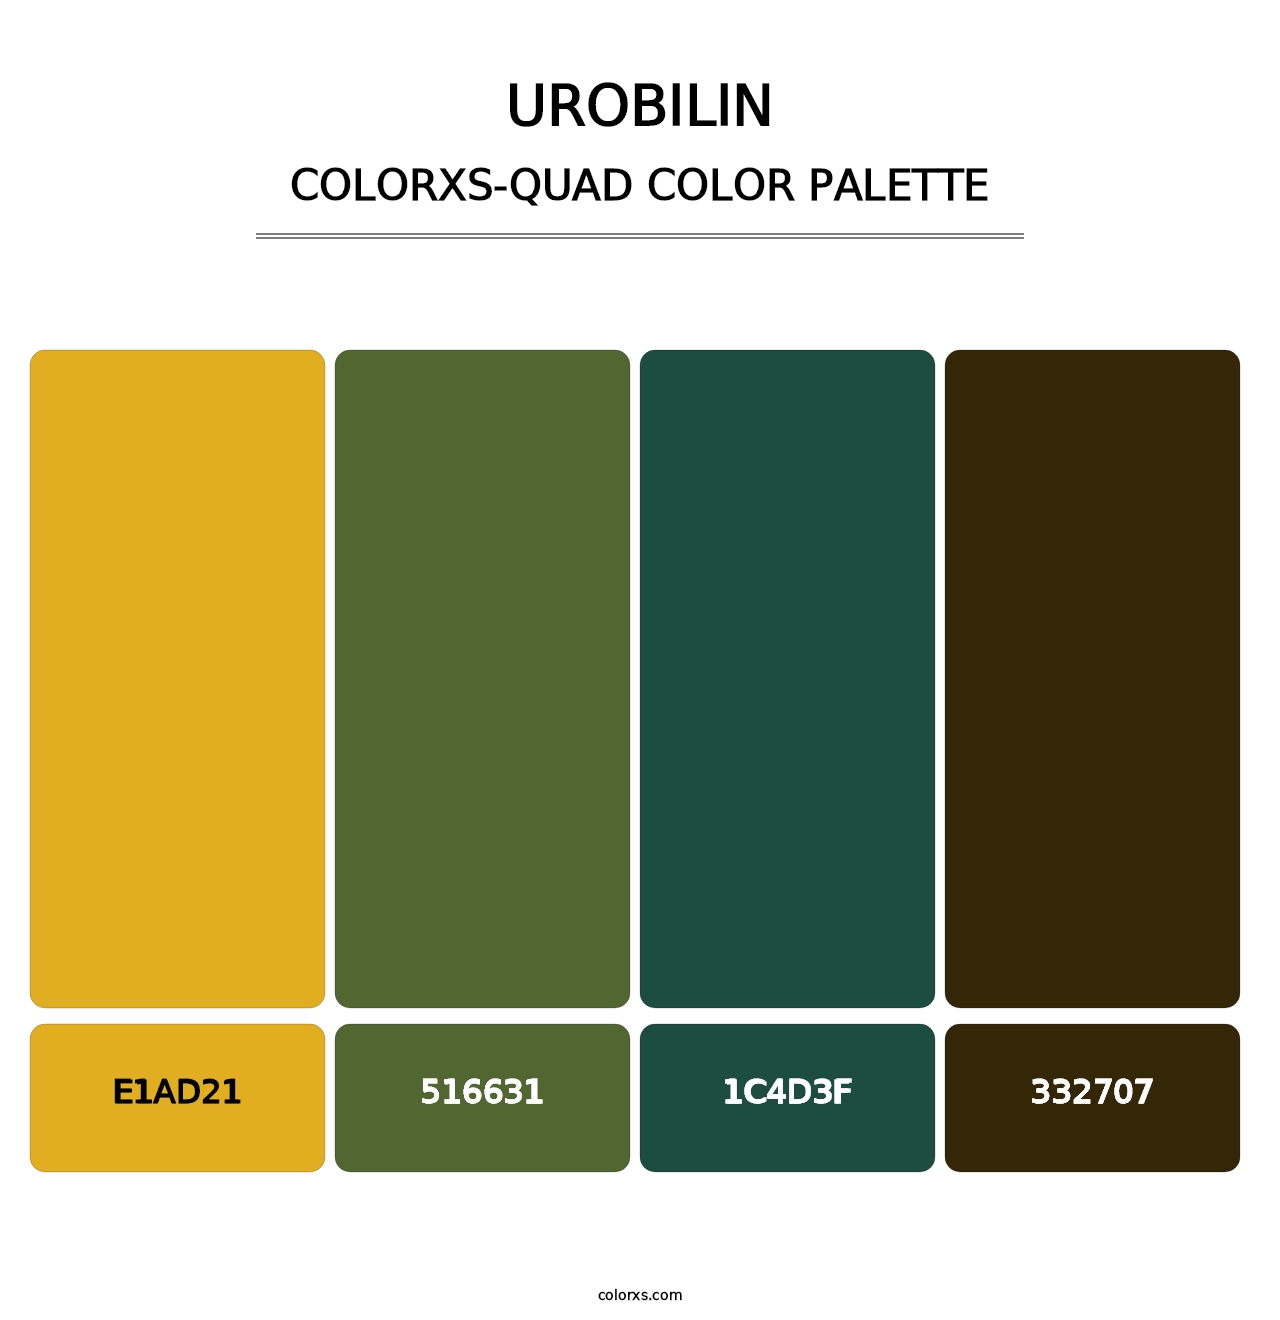 Urobilin - Colorxs Quad Palette